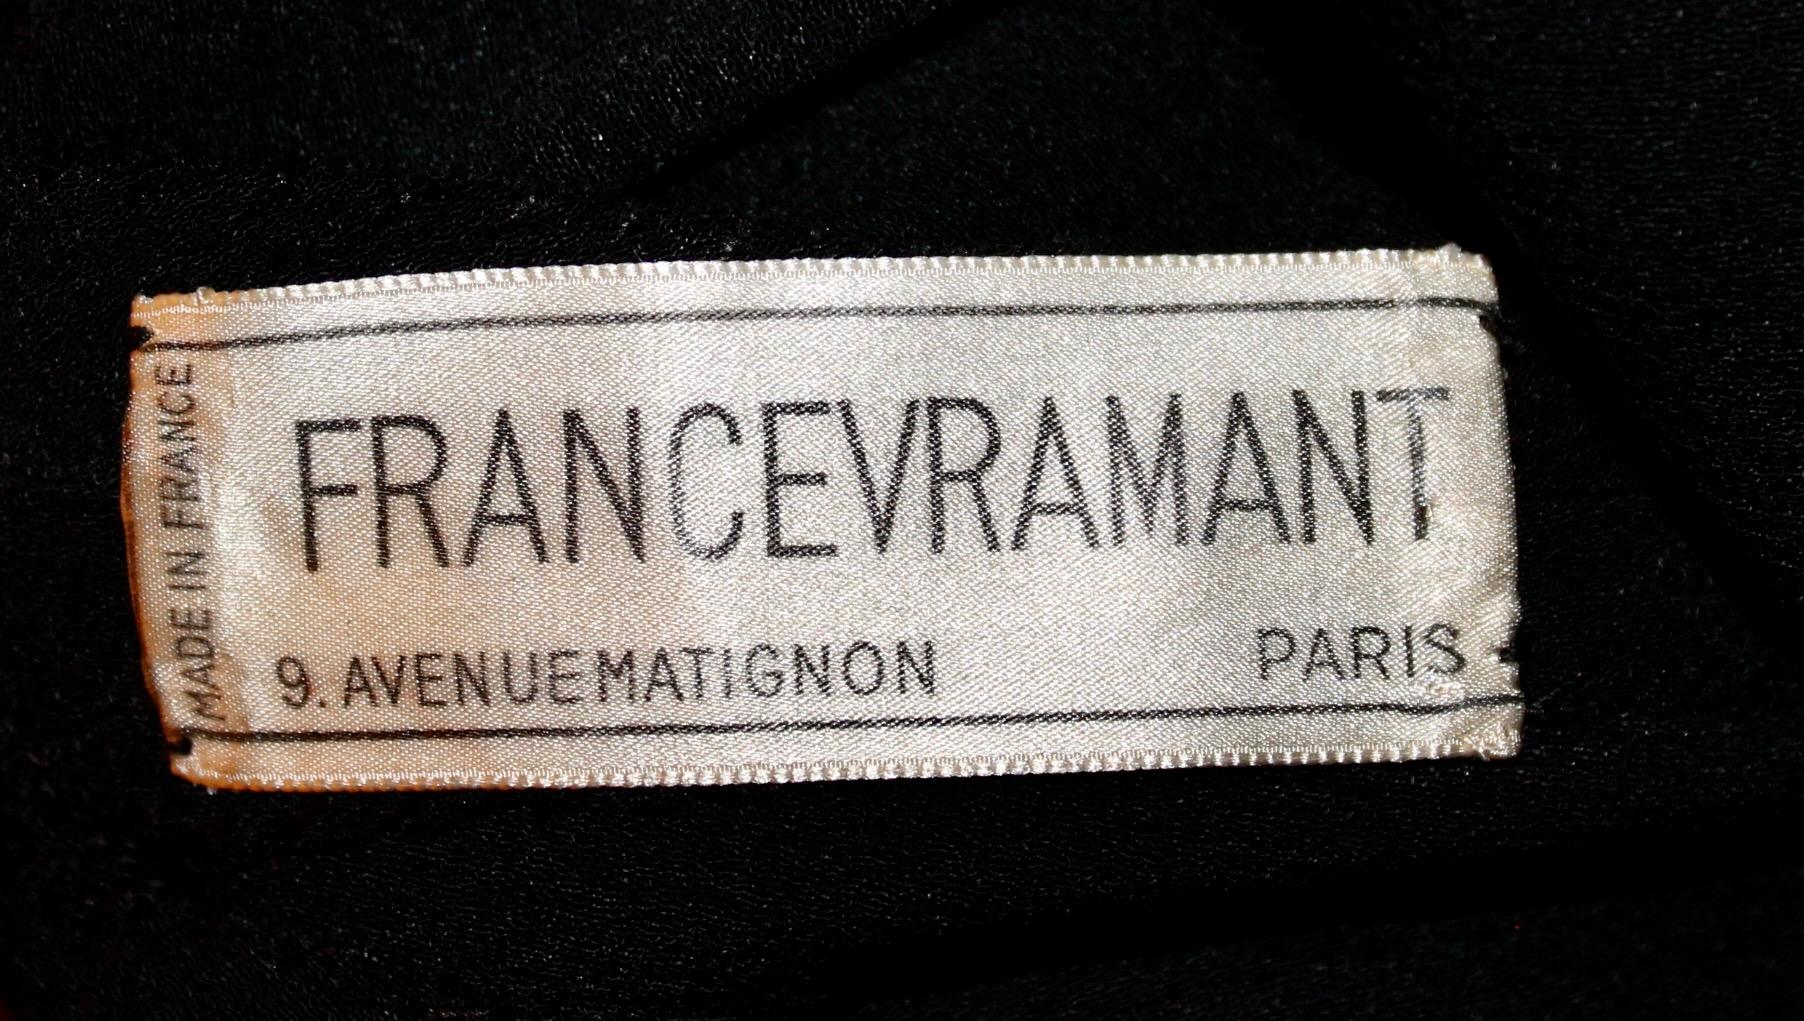 France Vramant Black Crepe Silk Evening Gown, 1930's Paris  For Sale 6